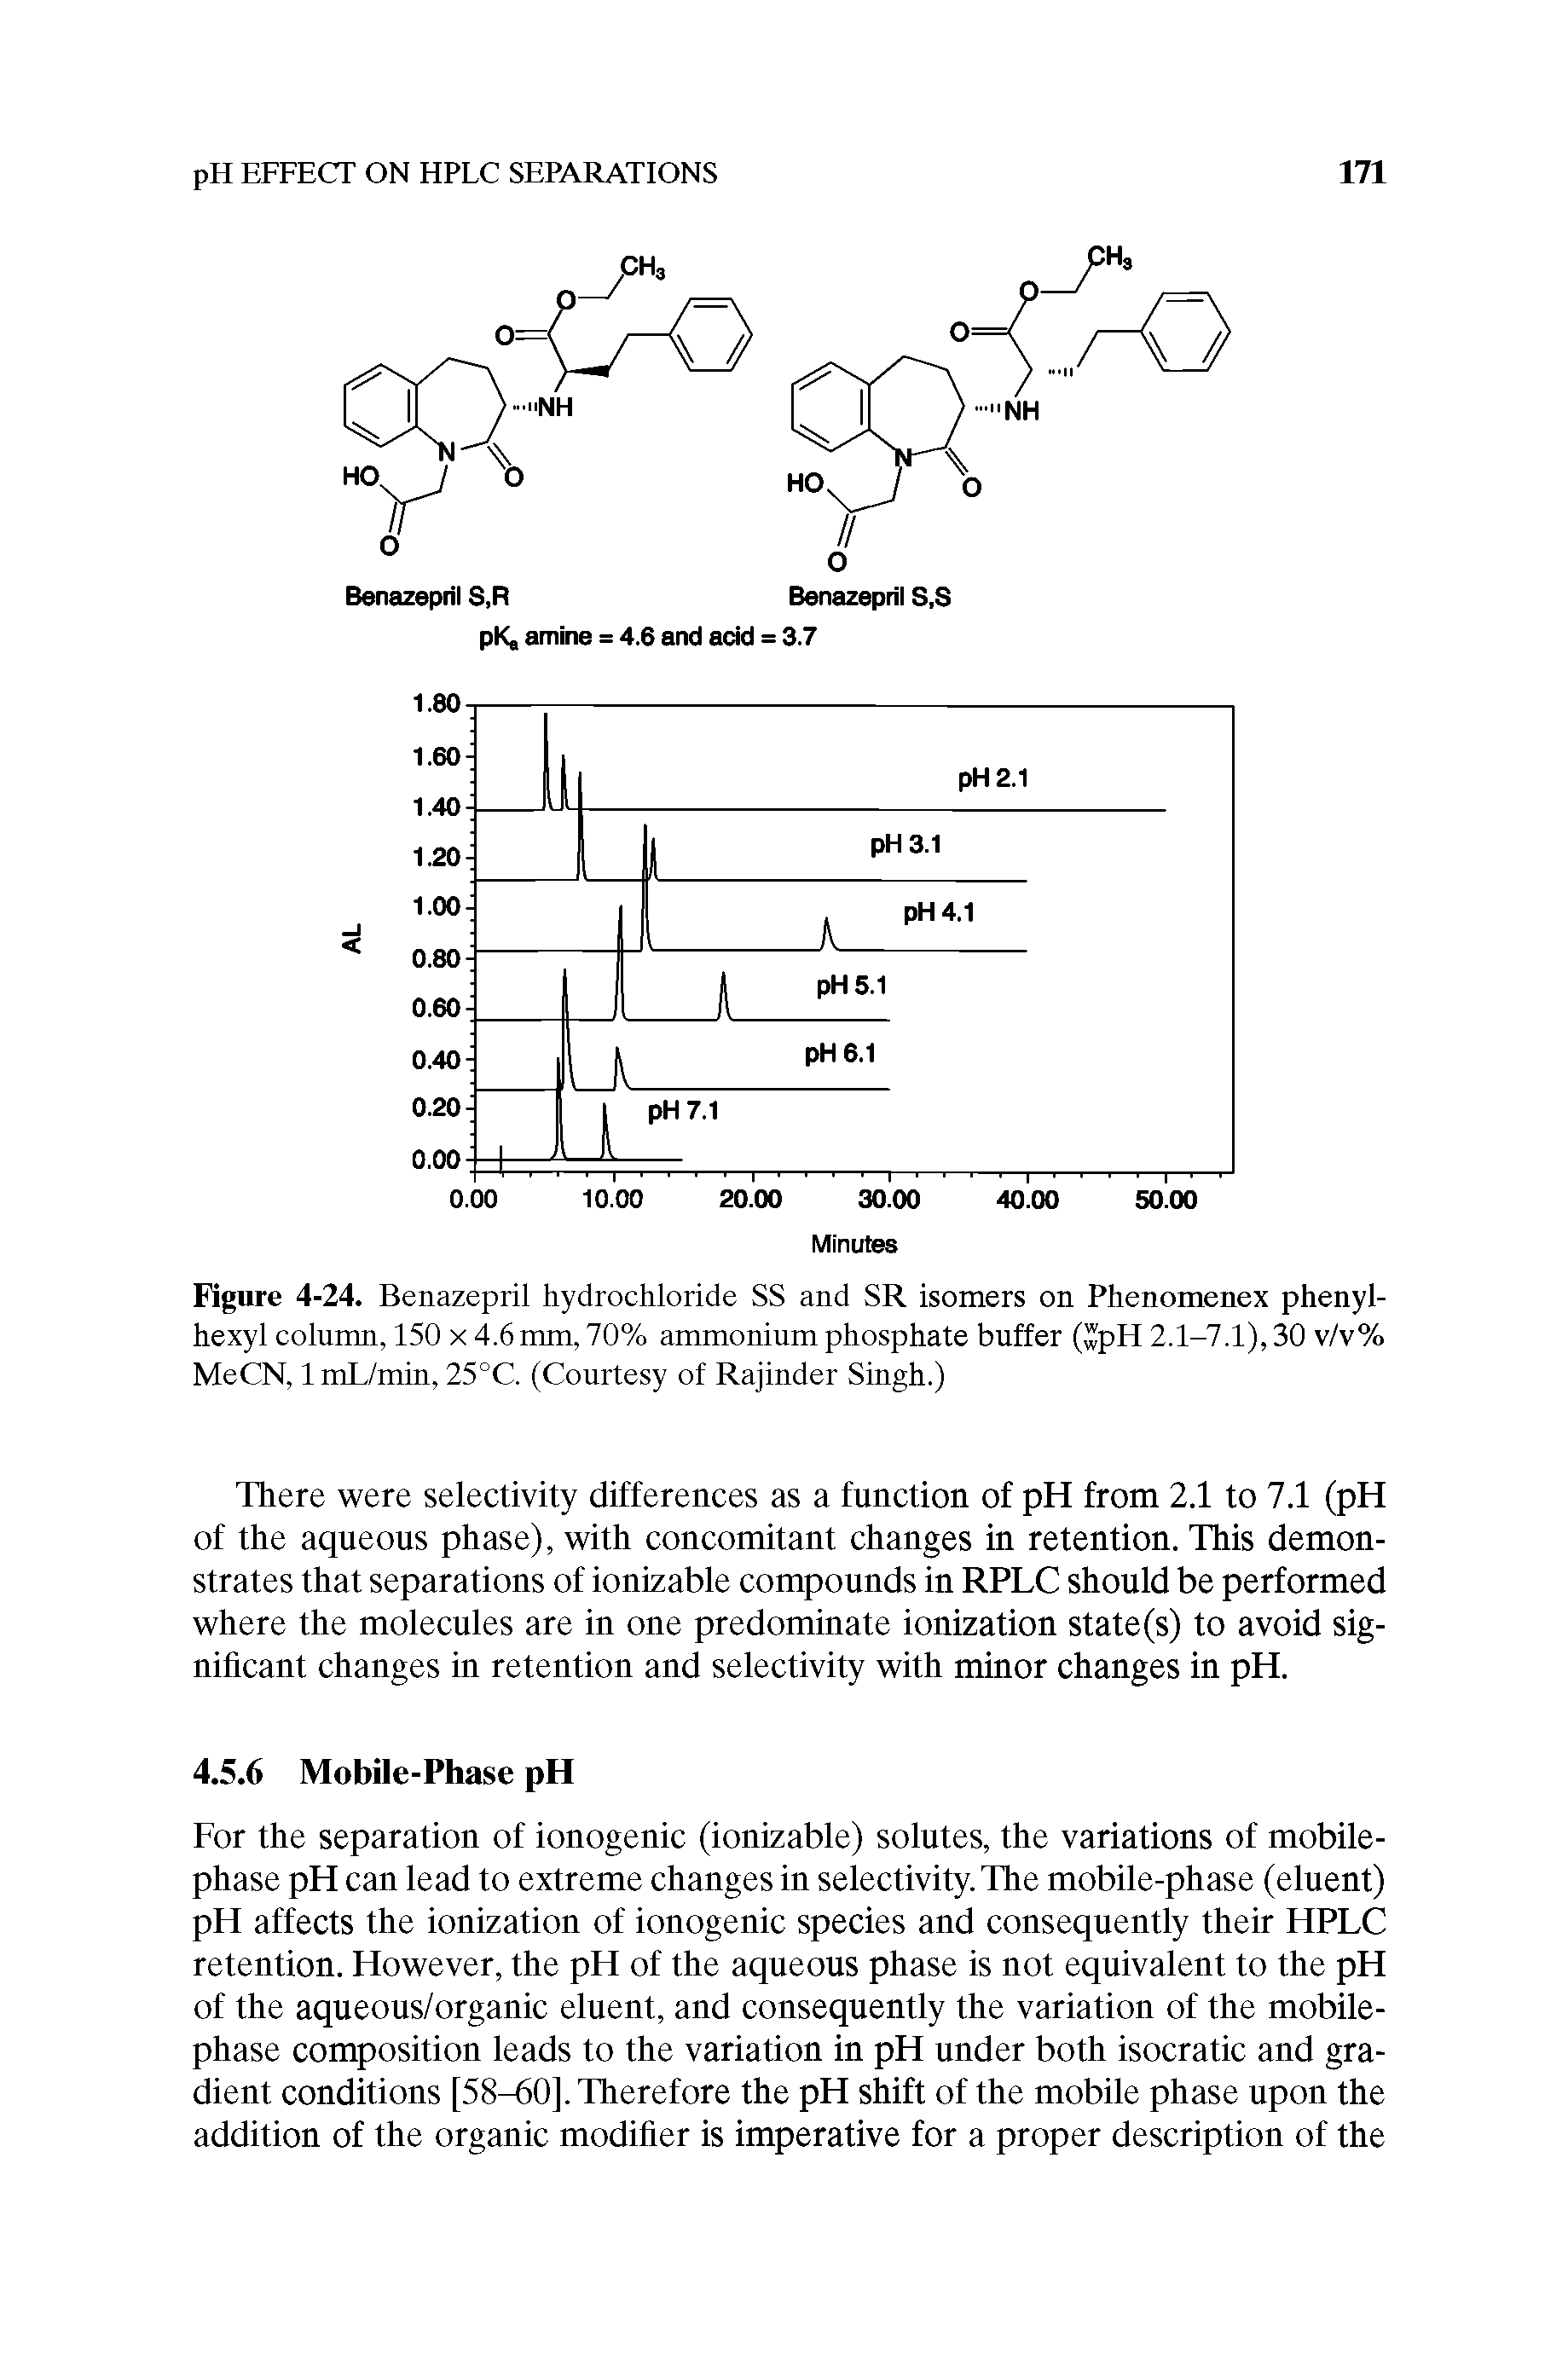 Figure 4-24. Benazepril hydrochloride SS and SR isomers on Phenomenex phenyl-hexyl column, 150 x 4.6 mm, 70% ammonium phosphate buffer (wpH 2.1-7.1), 30 v/v% MeCN, ImL/min, 25°C. (Courtesy of Rajinder Singh.)...